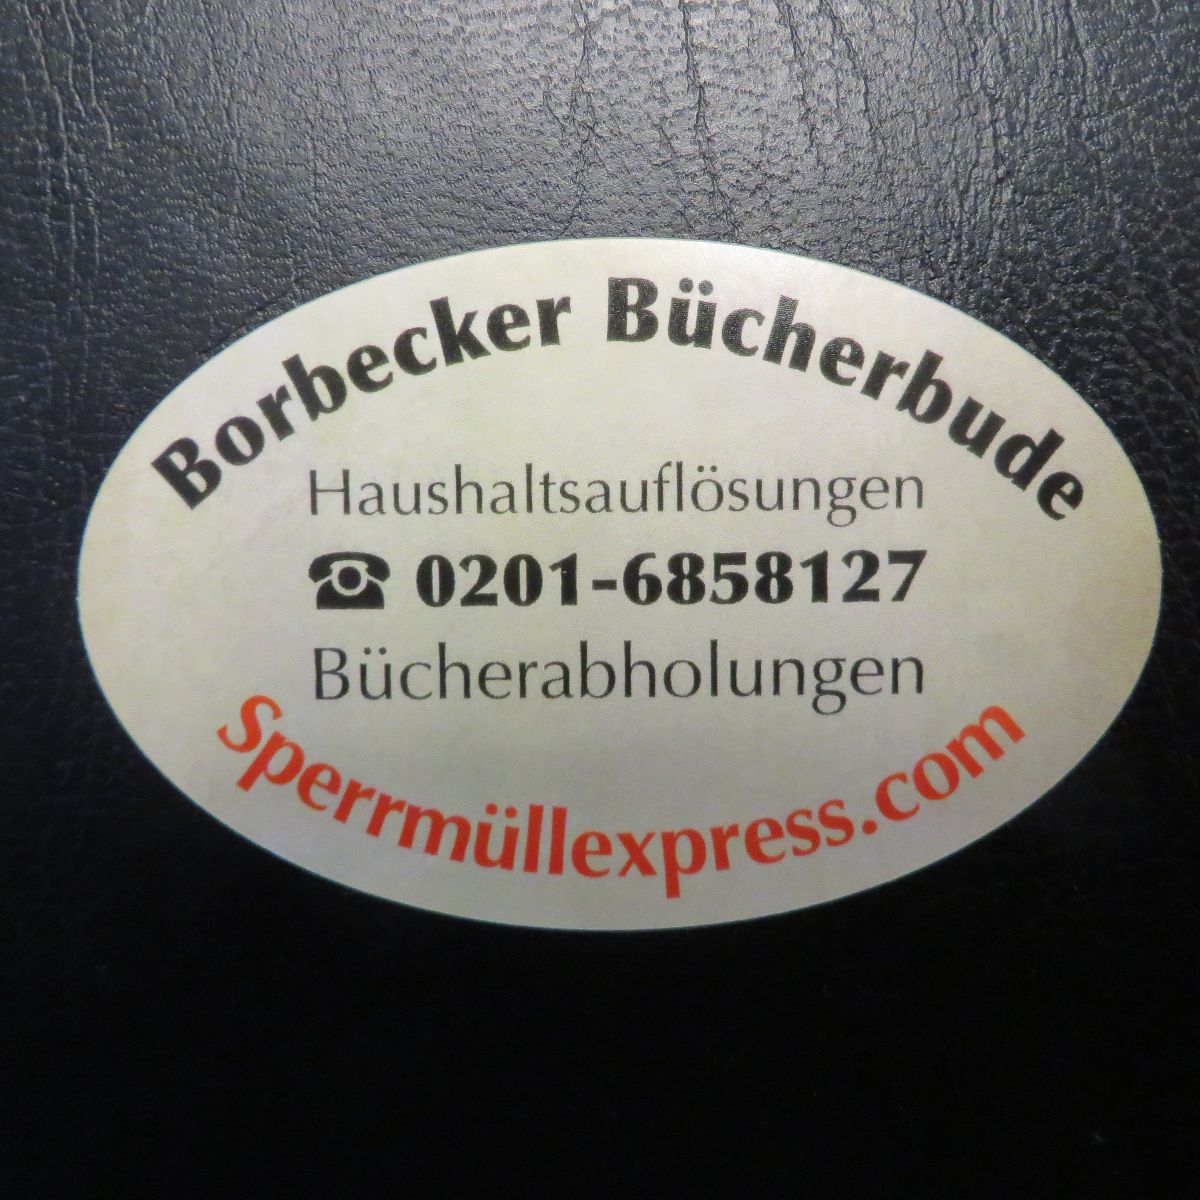 Borbecker Bücherbude in Essen